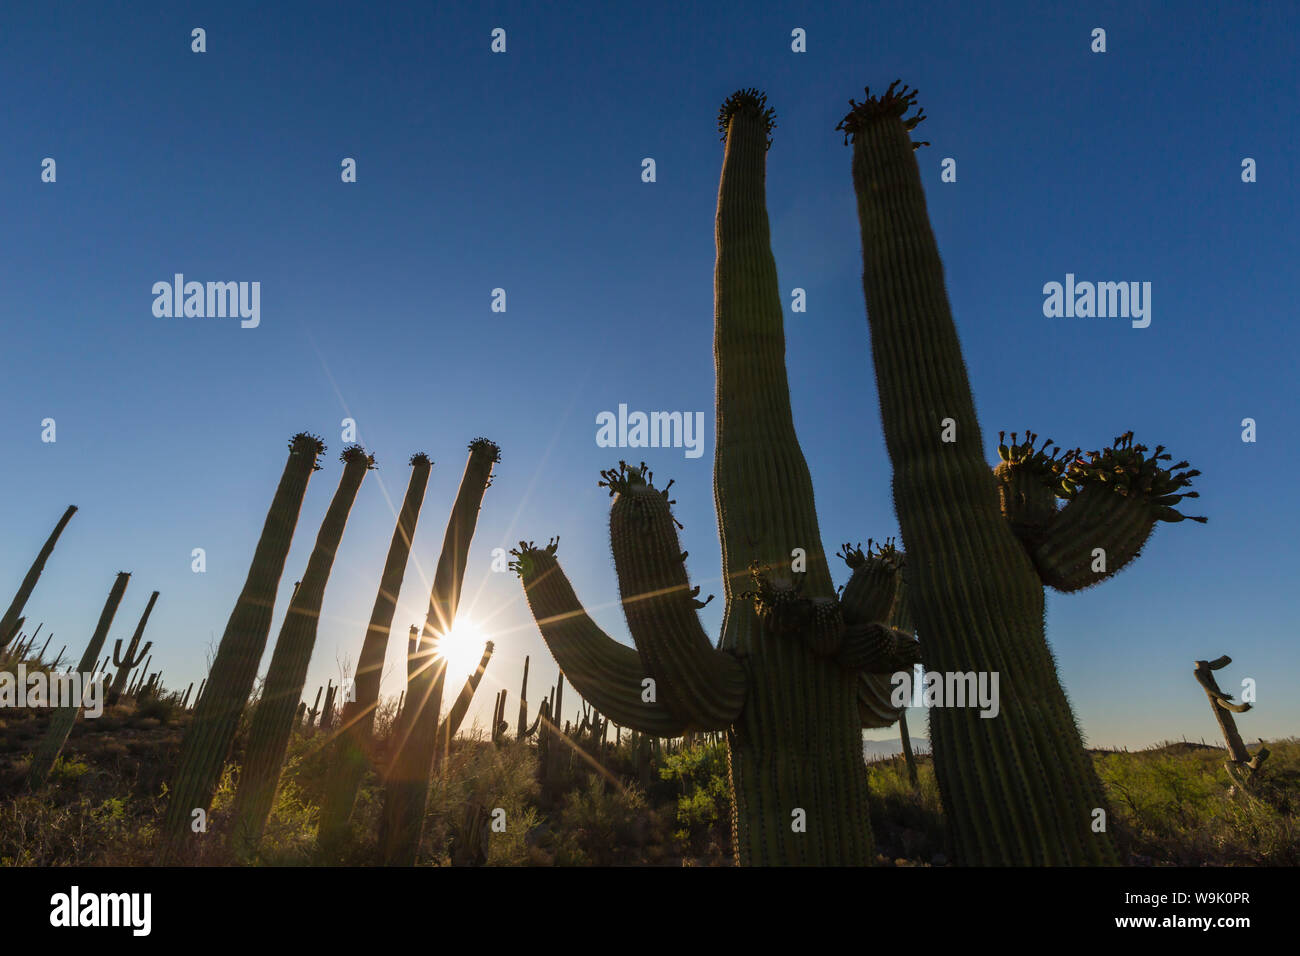 Sonnenaufgang auf dem Saguaro Kaktus in der Blüte (Carnegiea gigantea), Sweetwater bewahren, Tucson, Arizona, Vereinigte Staaten von Amerika, Nordamerika Stockfoto